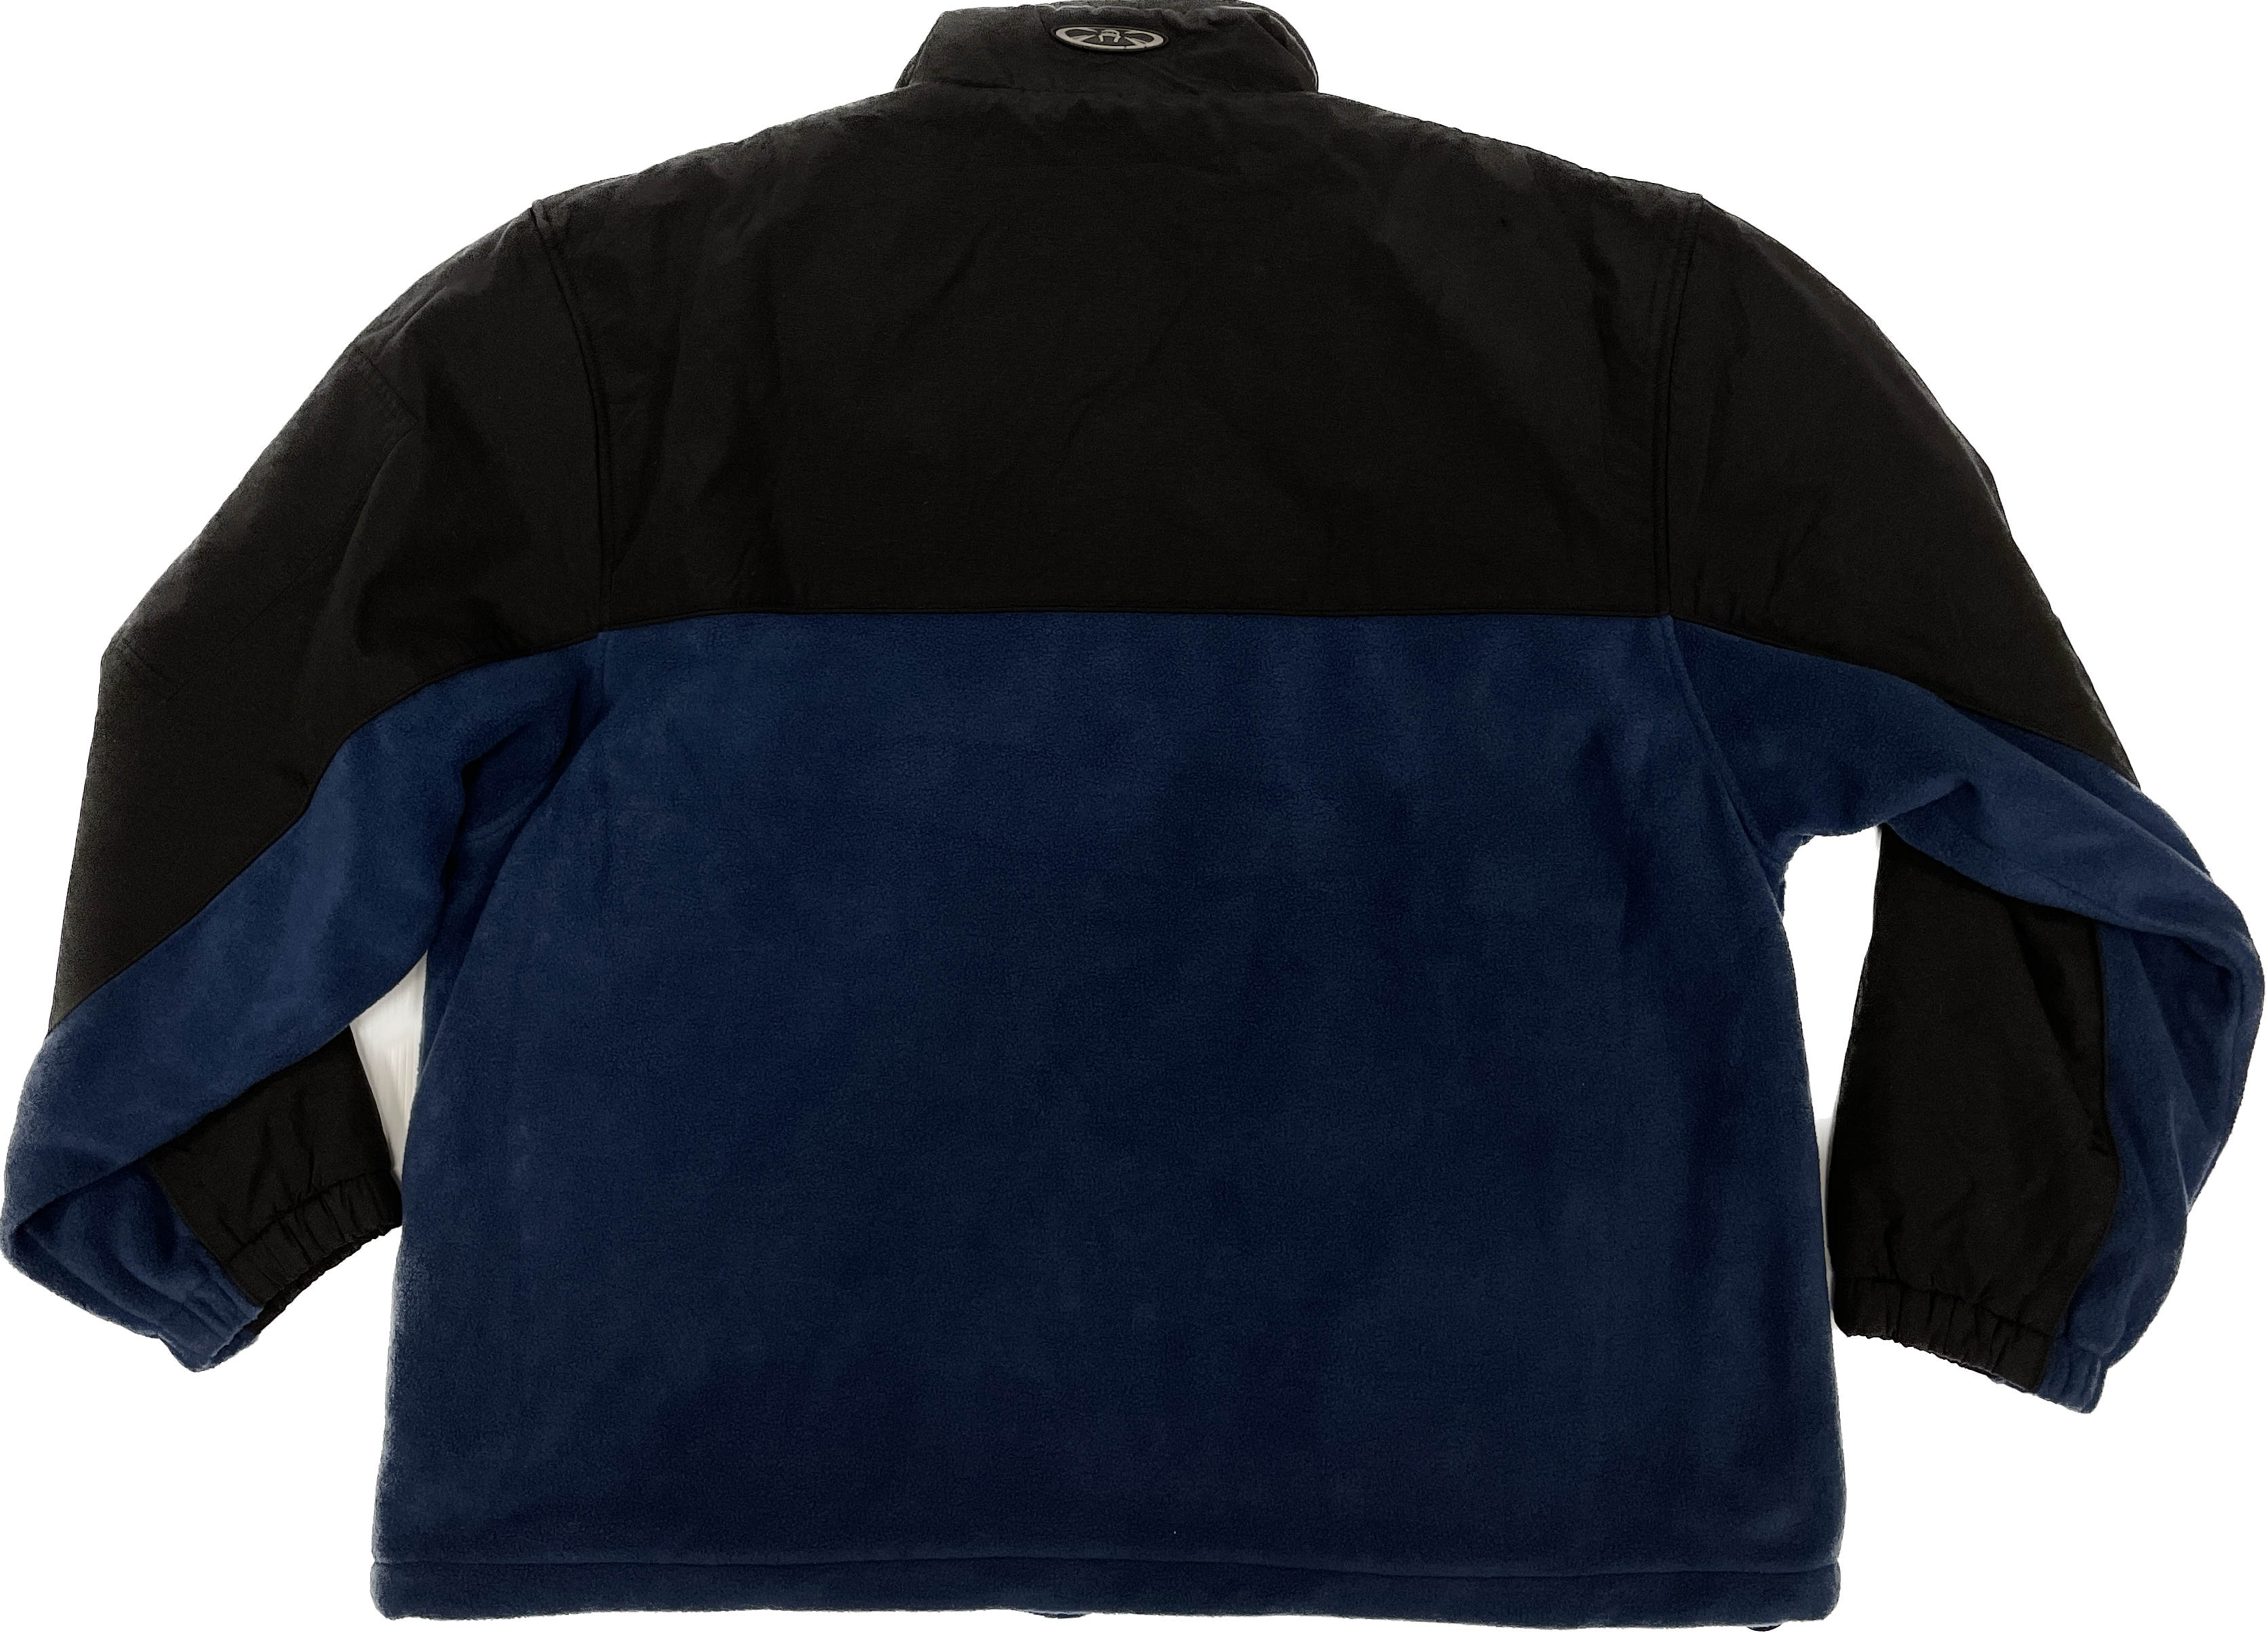 Stormtech Warm Fleece Jacket - Navy & Black